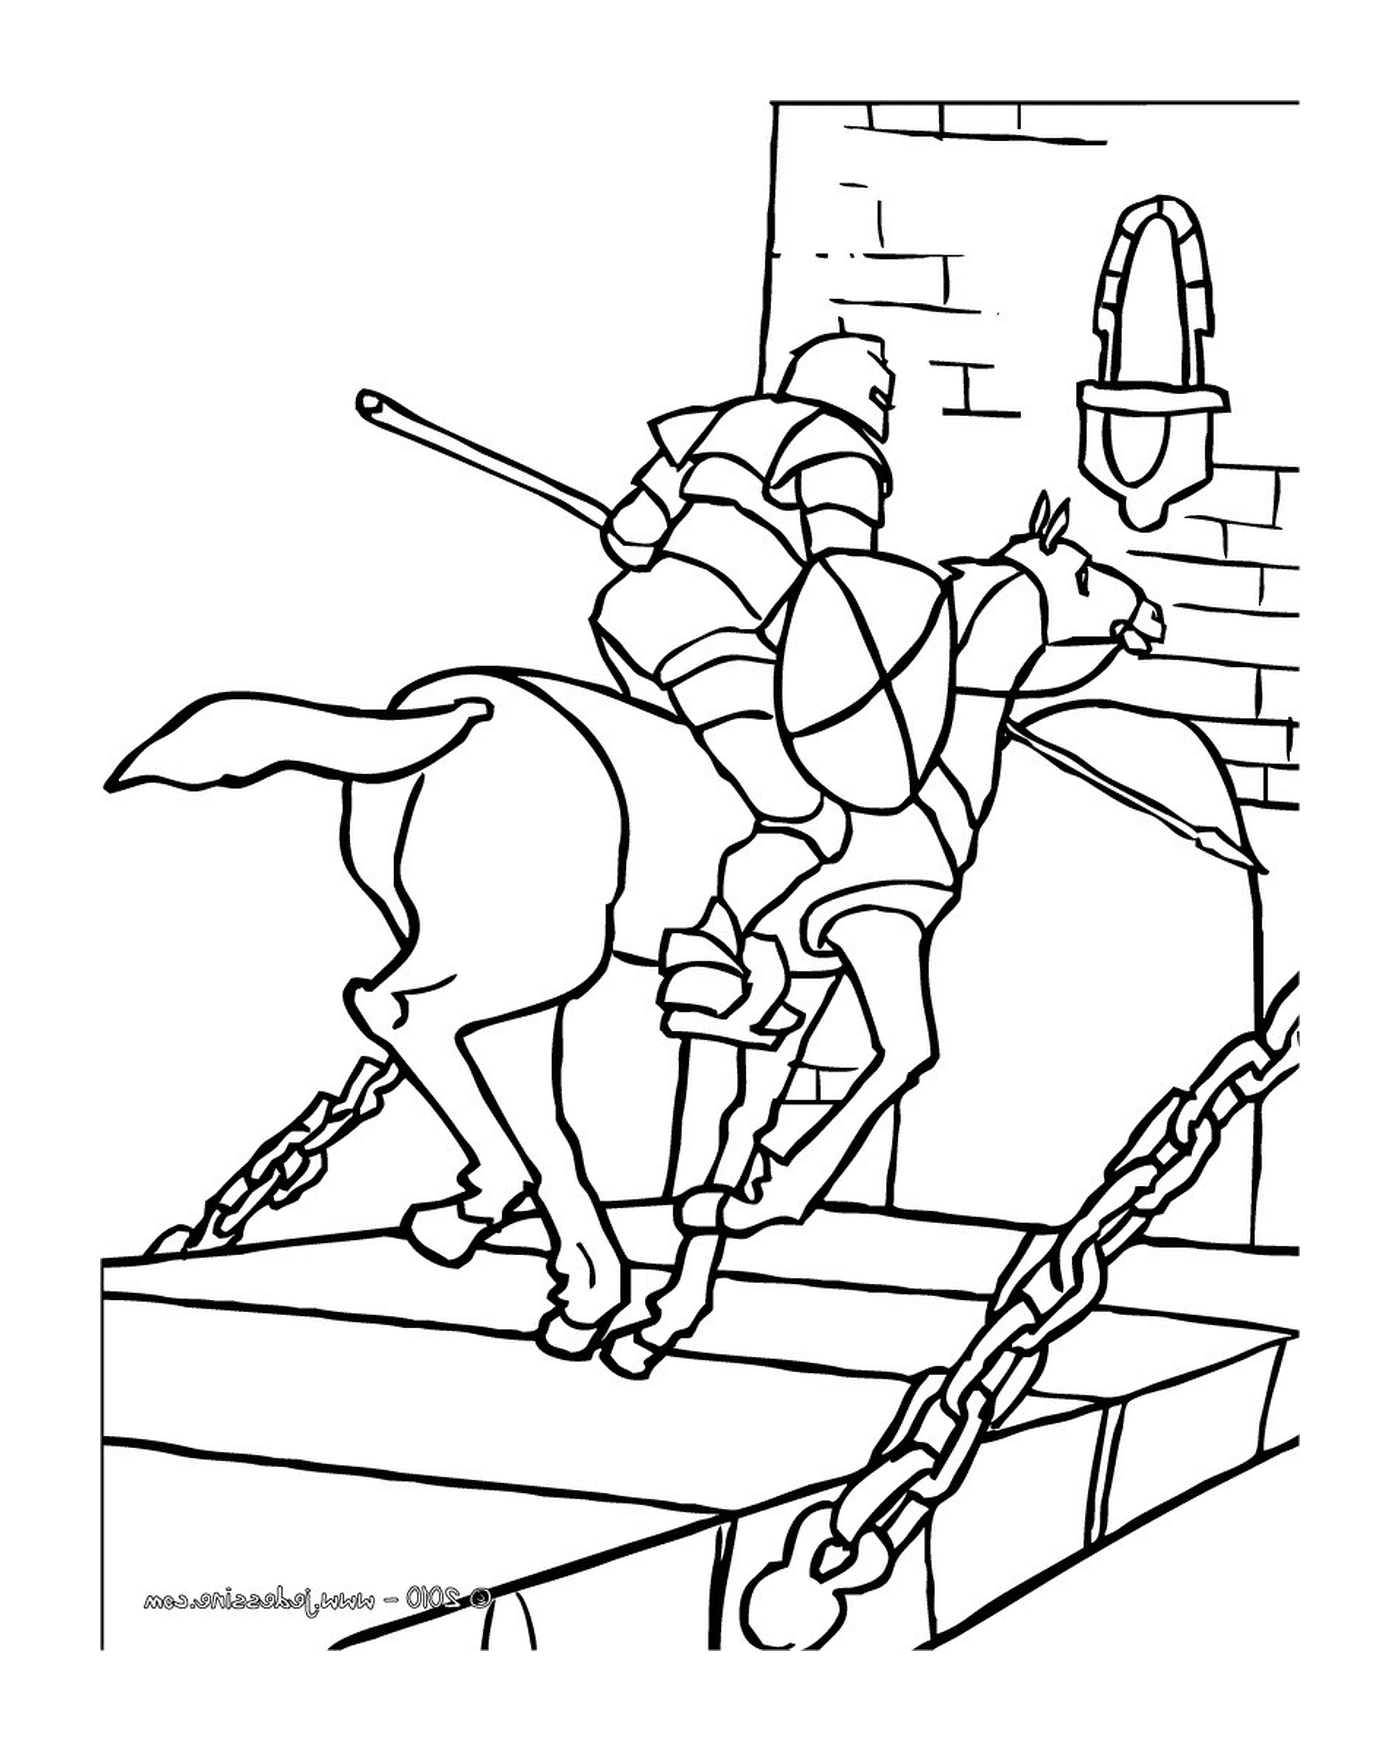   Un homme à cheval sur une rampe 